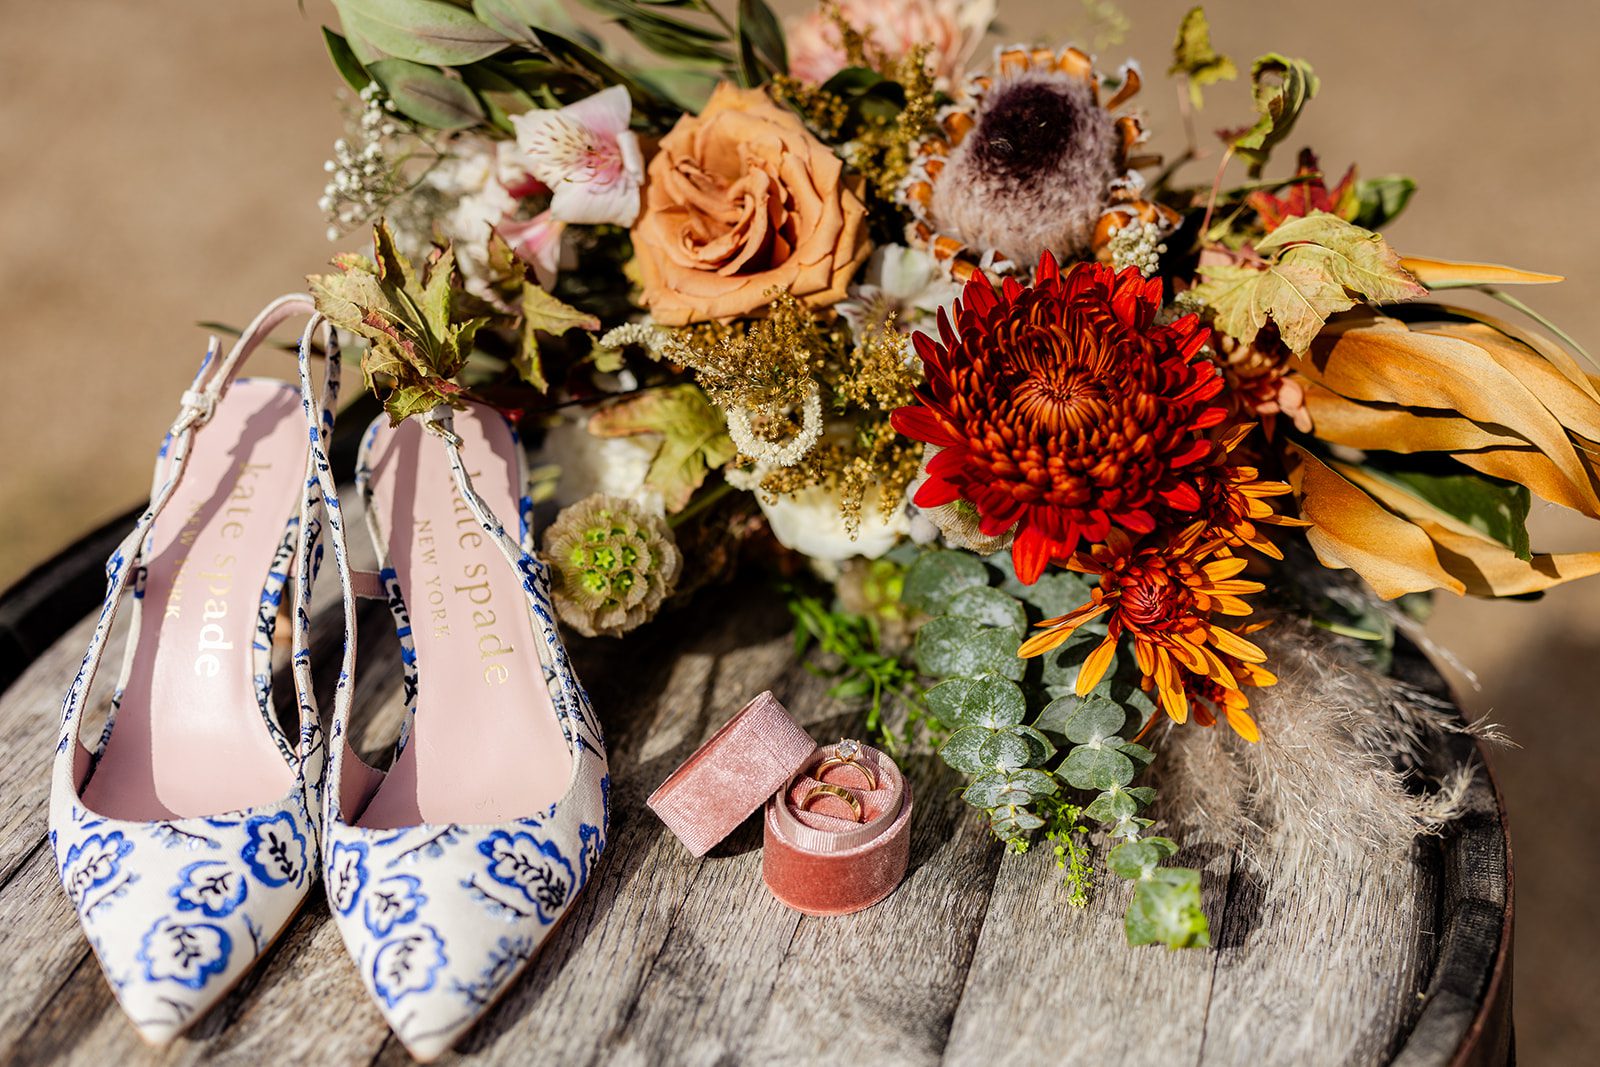 Blue wedding shoes, Something blue wedding, Wedding ring box, Boho wedding bouquet, Kate spade wedding shoes